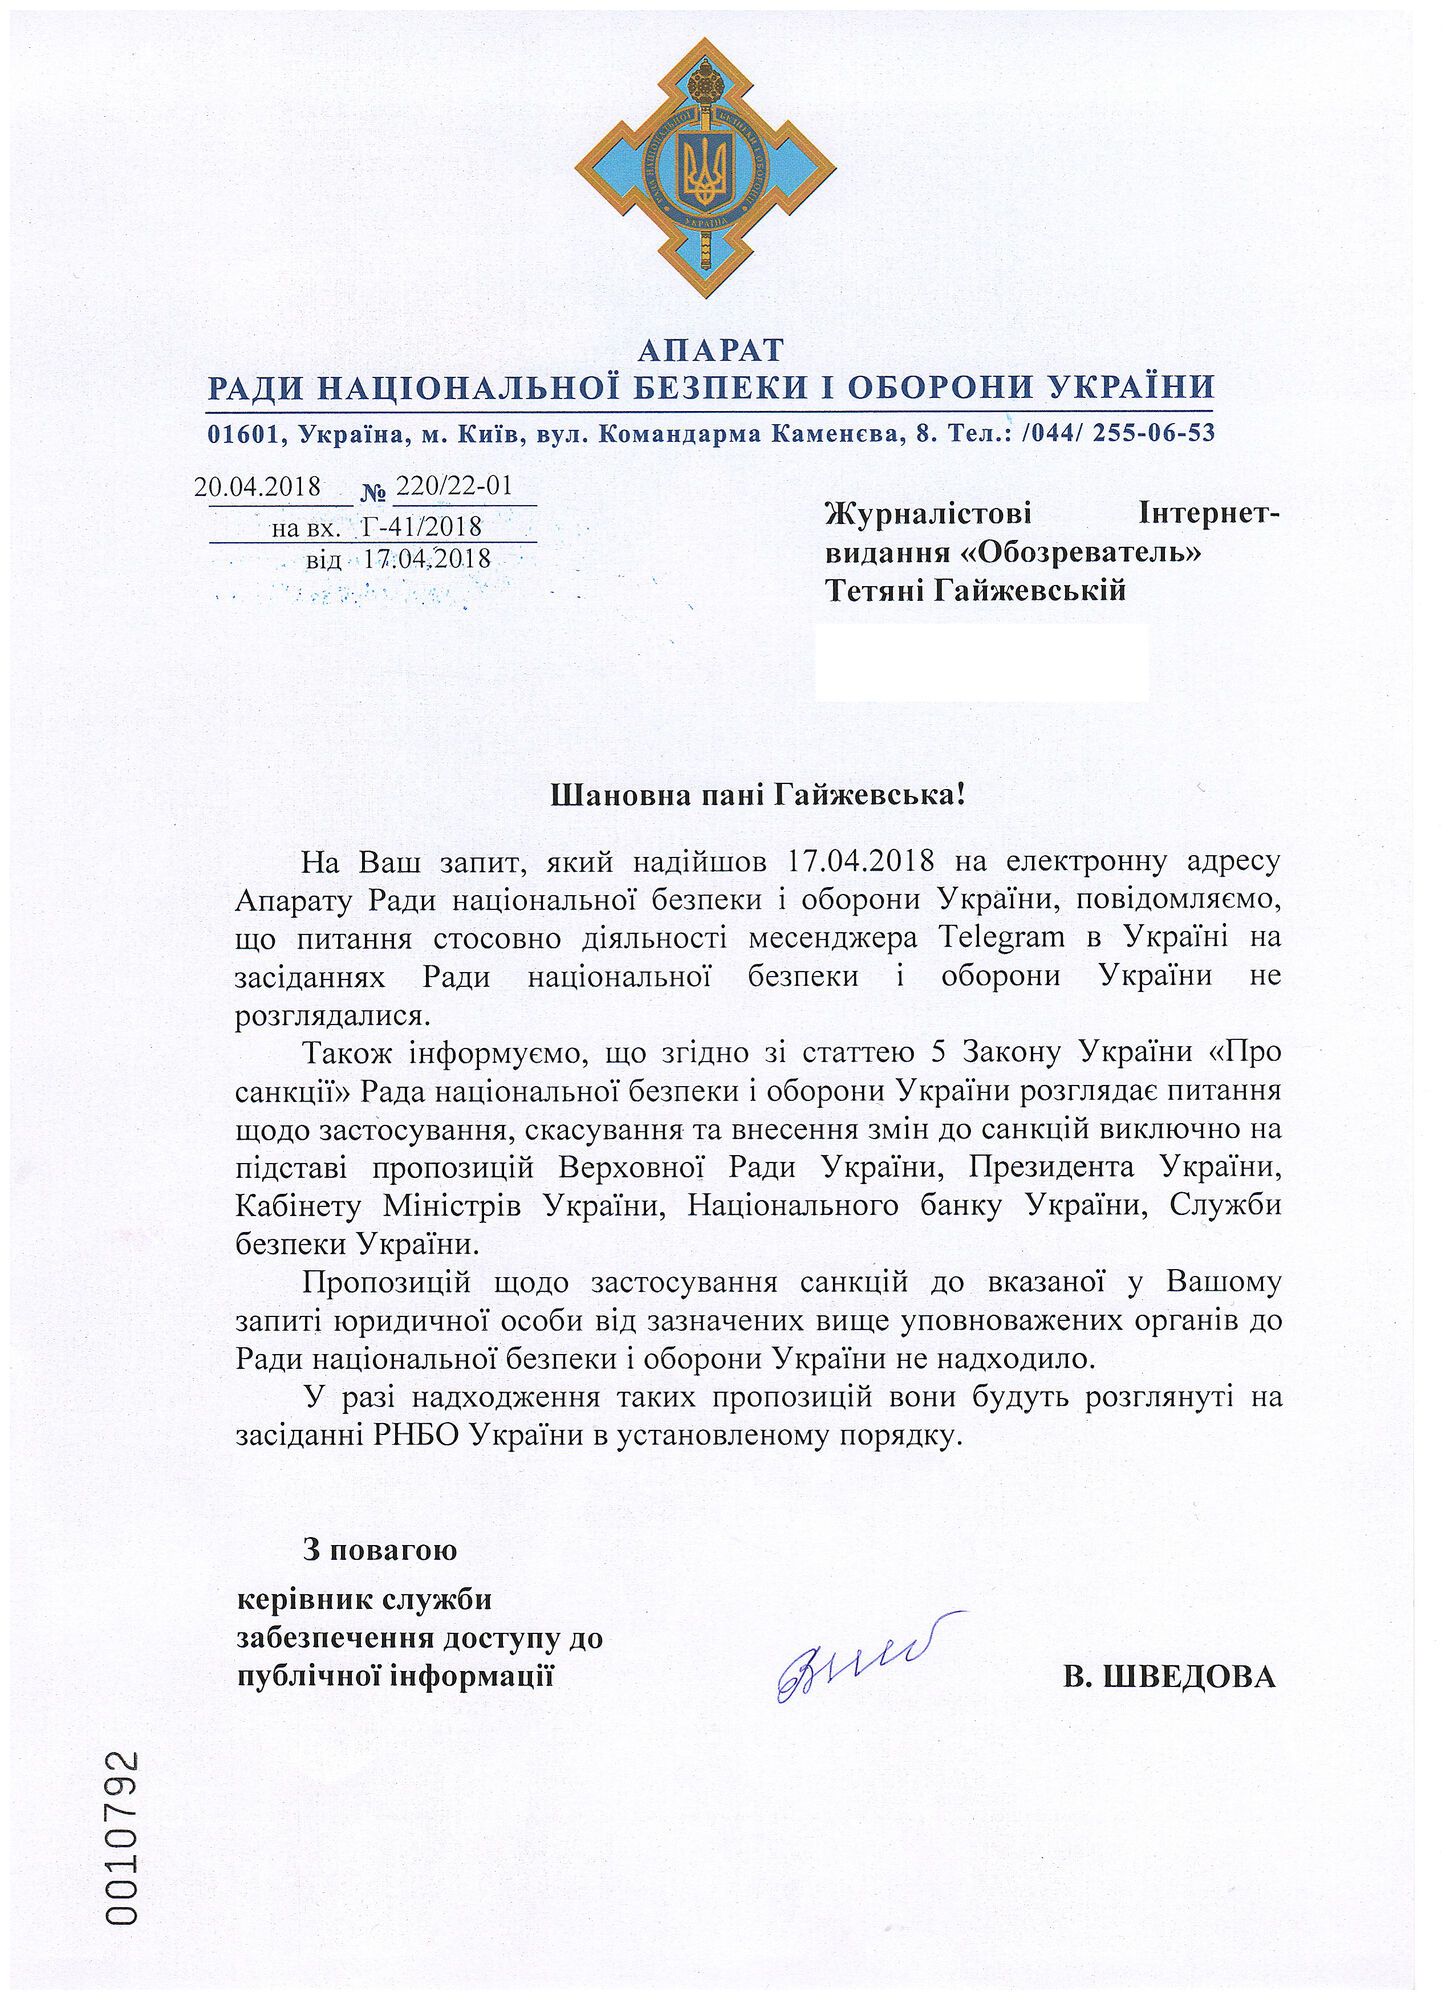 В РНБО України відповіли щодо санкцій до Telegram: документ